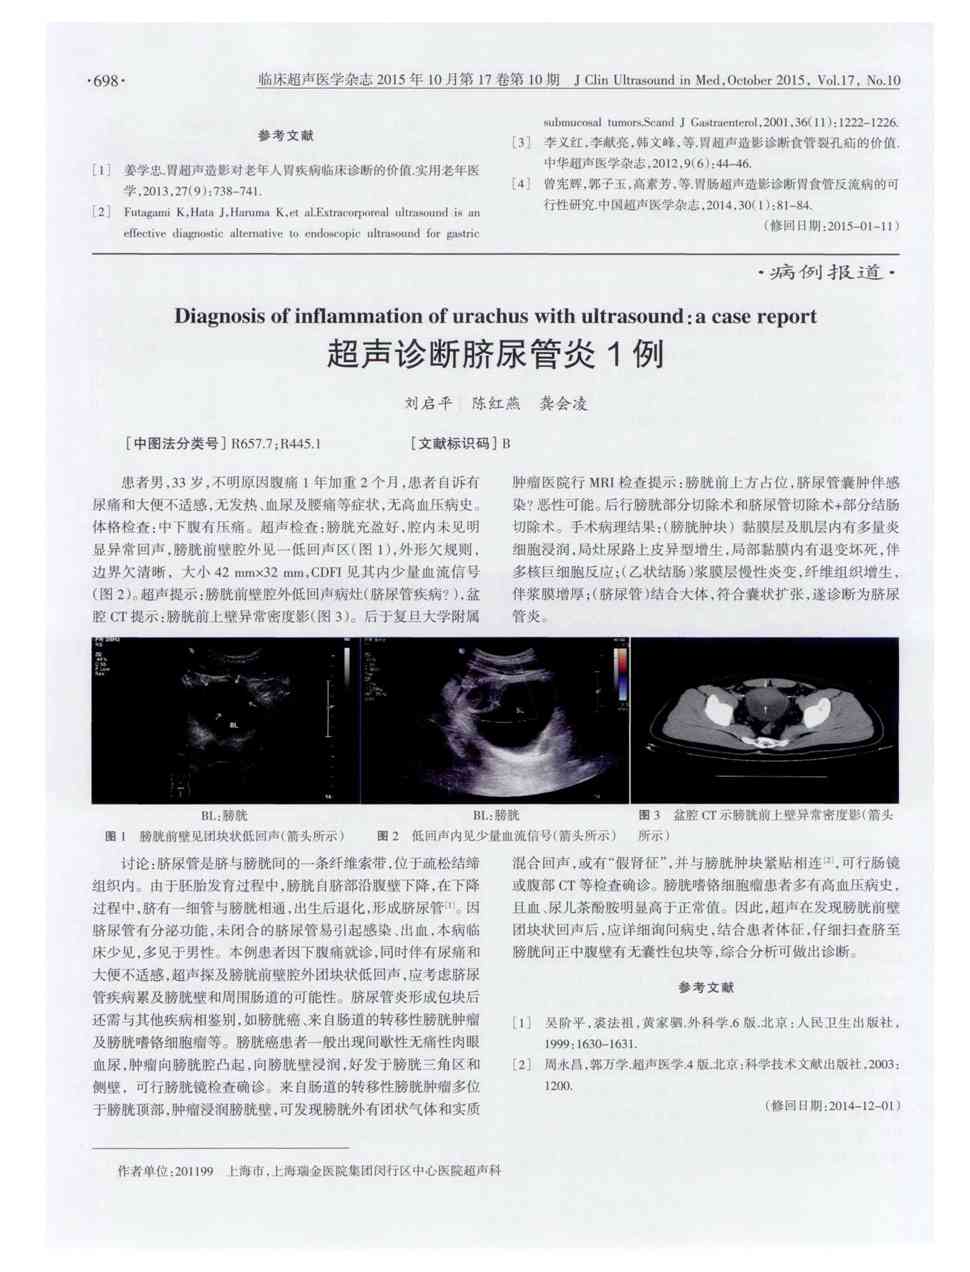 期刊超声诊断脐尿管炎1例被引量:1     患者男,33岁,不明原因腹痛1年